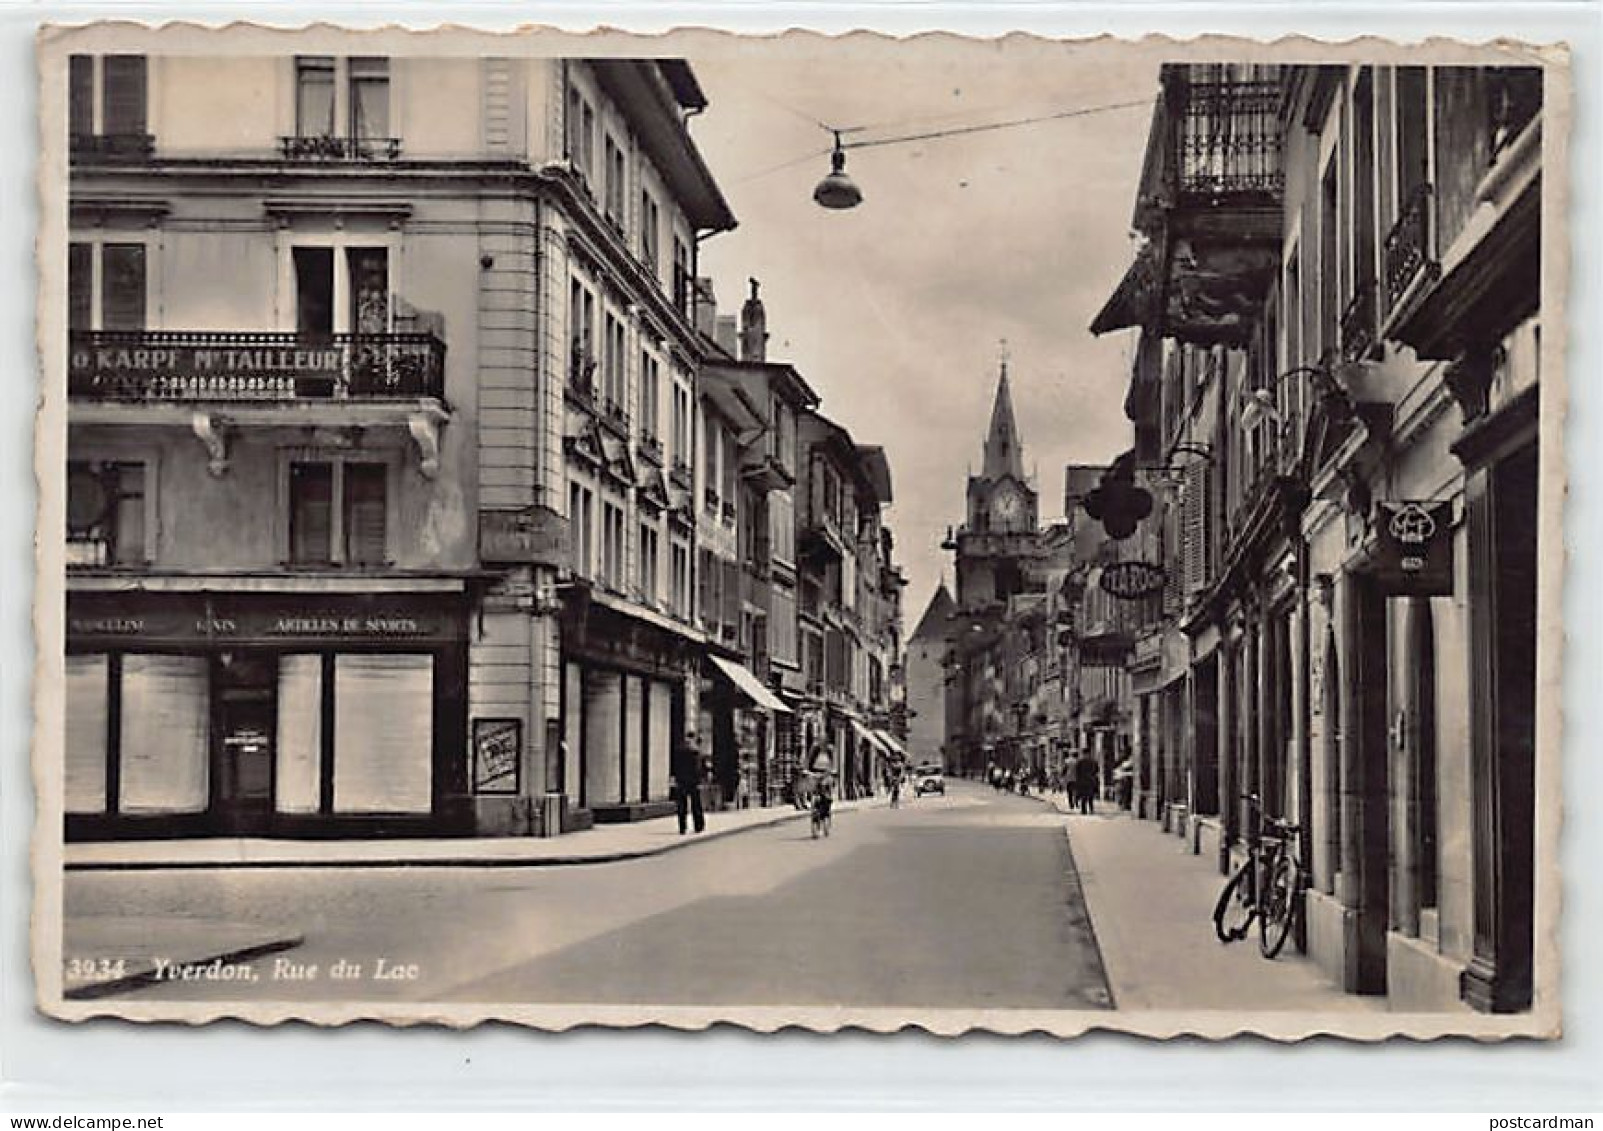 YVERDON-LES-BAINS (VD) Rue Du Lac - O. Karpf Maître Tailleur - Ed. C. SartorI 3934 - Yverdon-les-Bains 